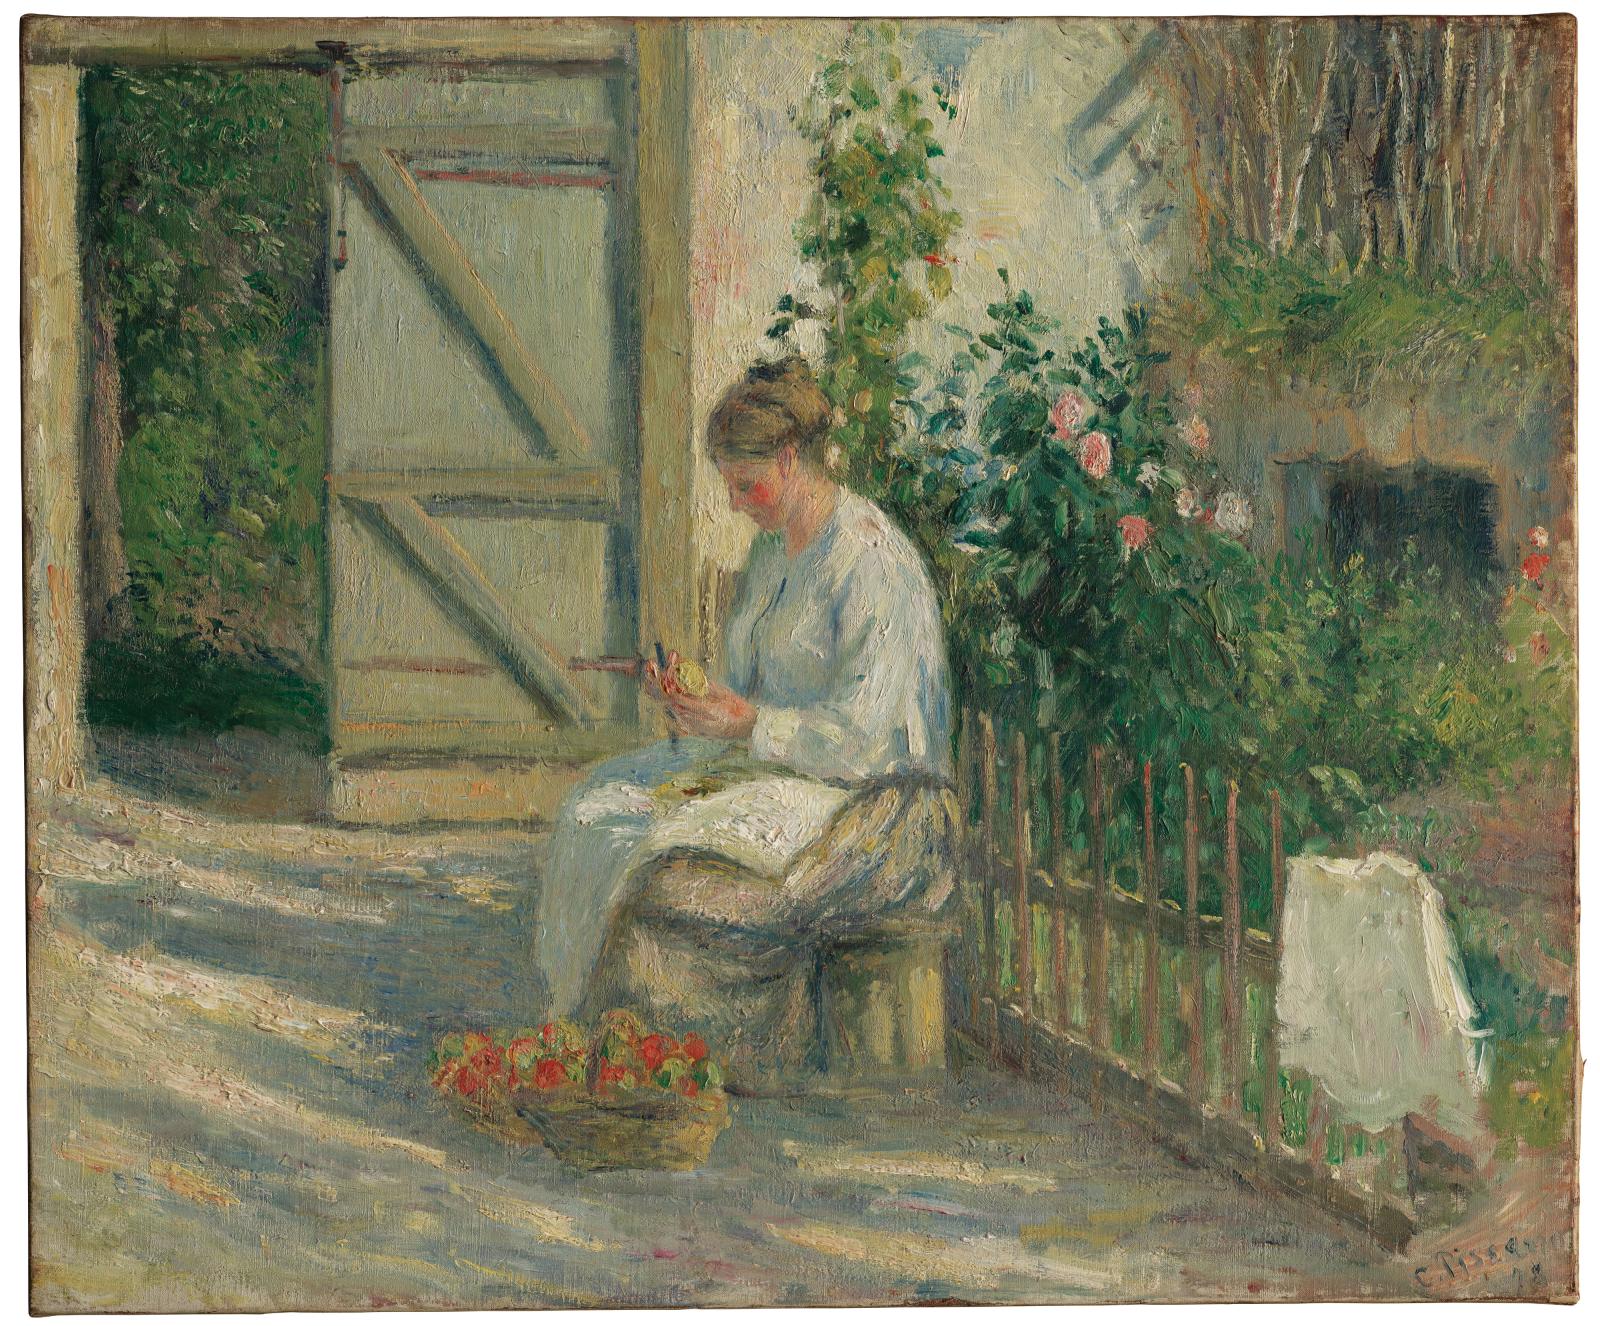 Un instant du quotidien saisi par Camille Pissarro